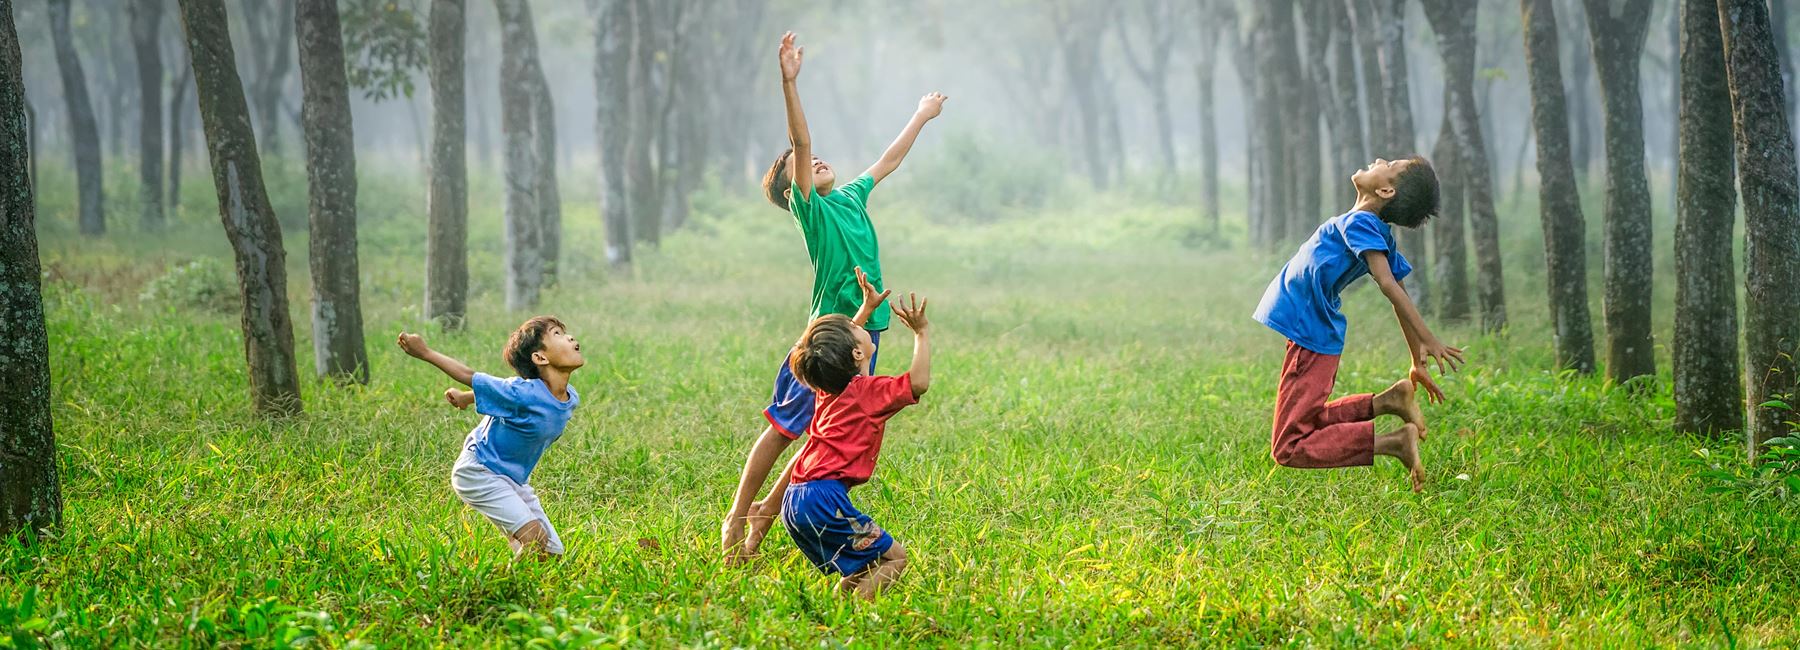 Barn som hoppar högt i gräset